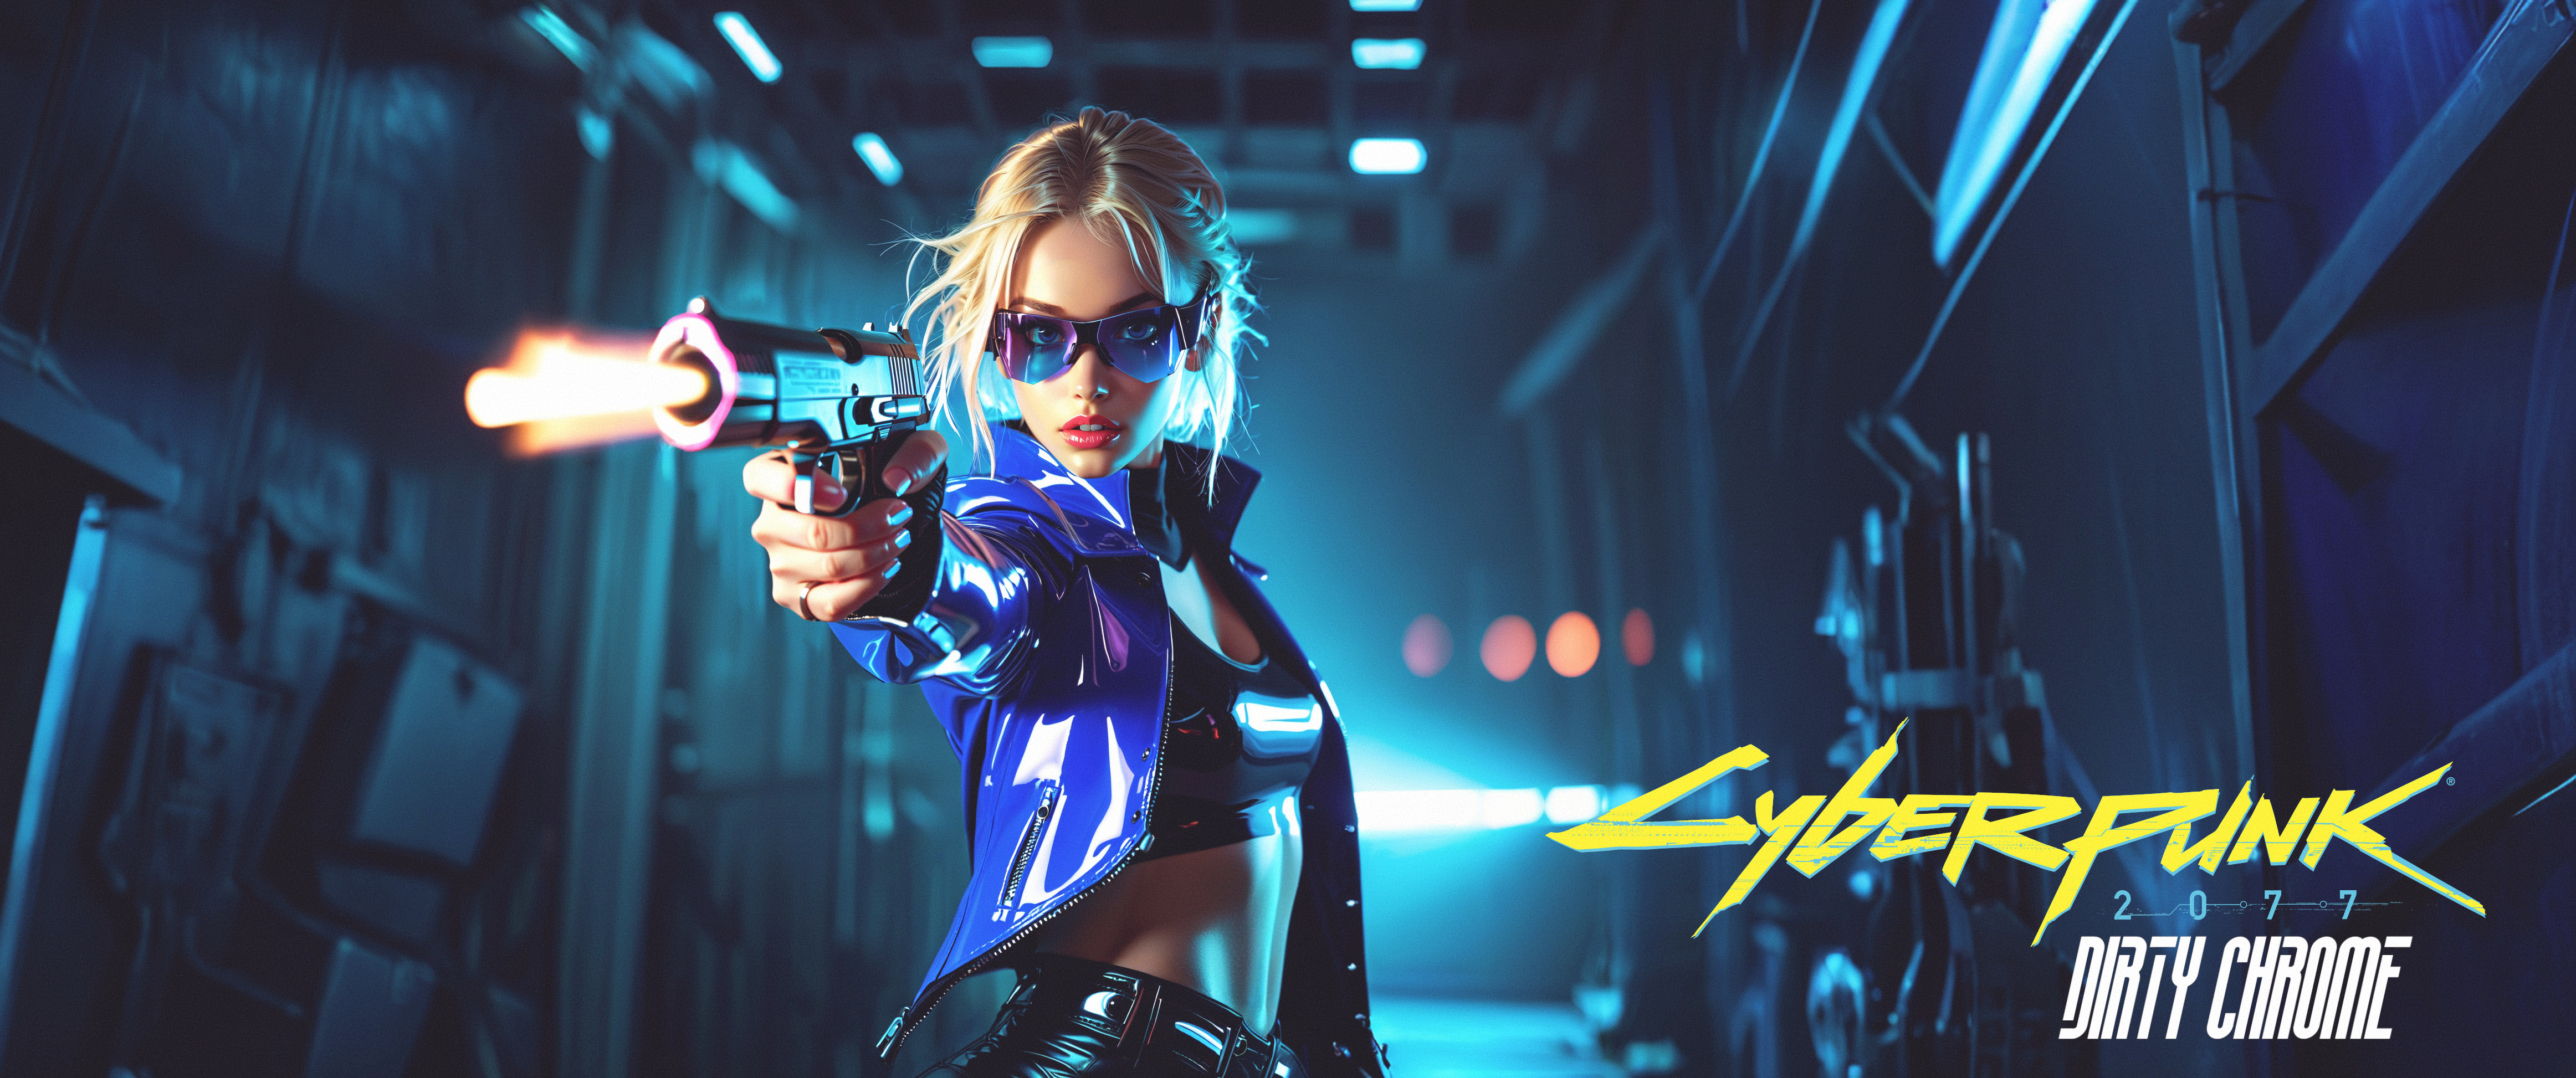 General 4649x1946 Cyberpunk 2077 cyberpunk science fiction science fiction women blonde pistol ultrawide